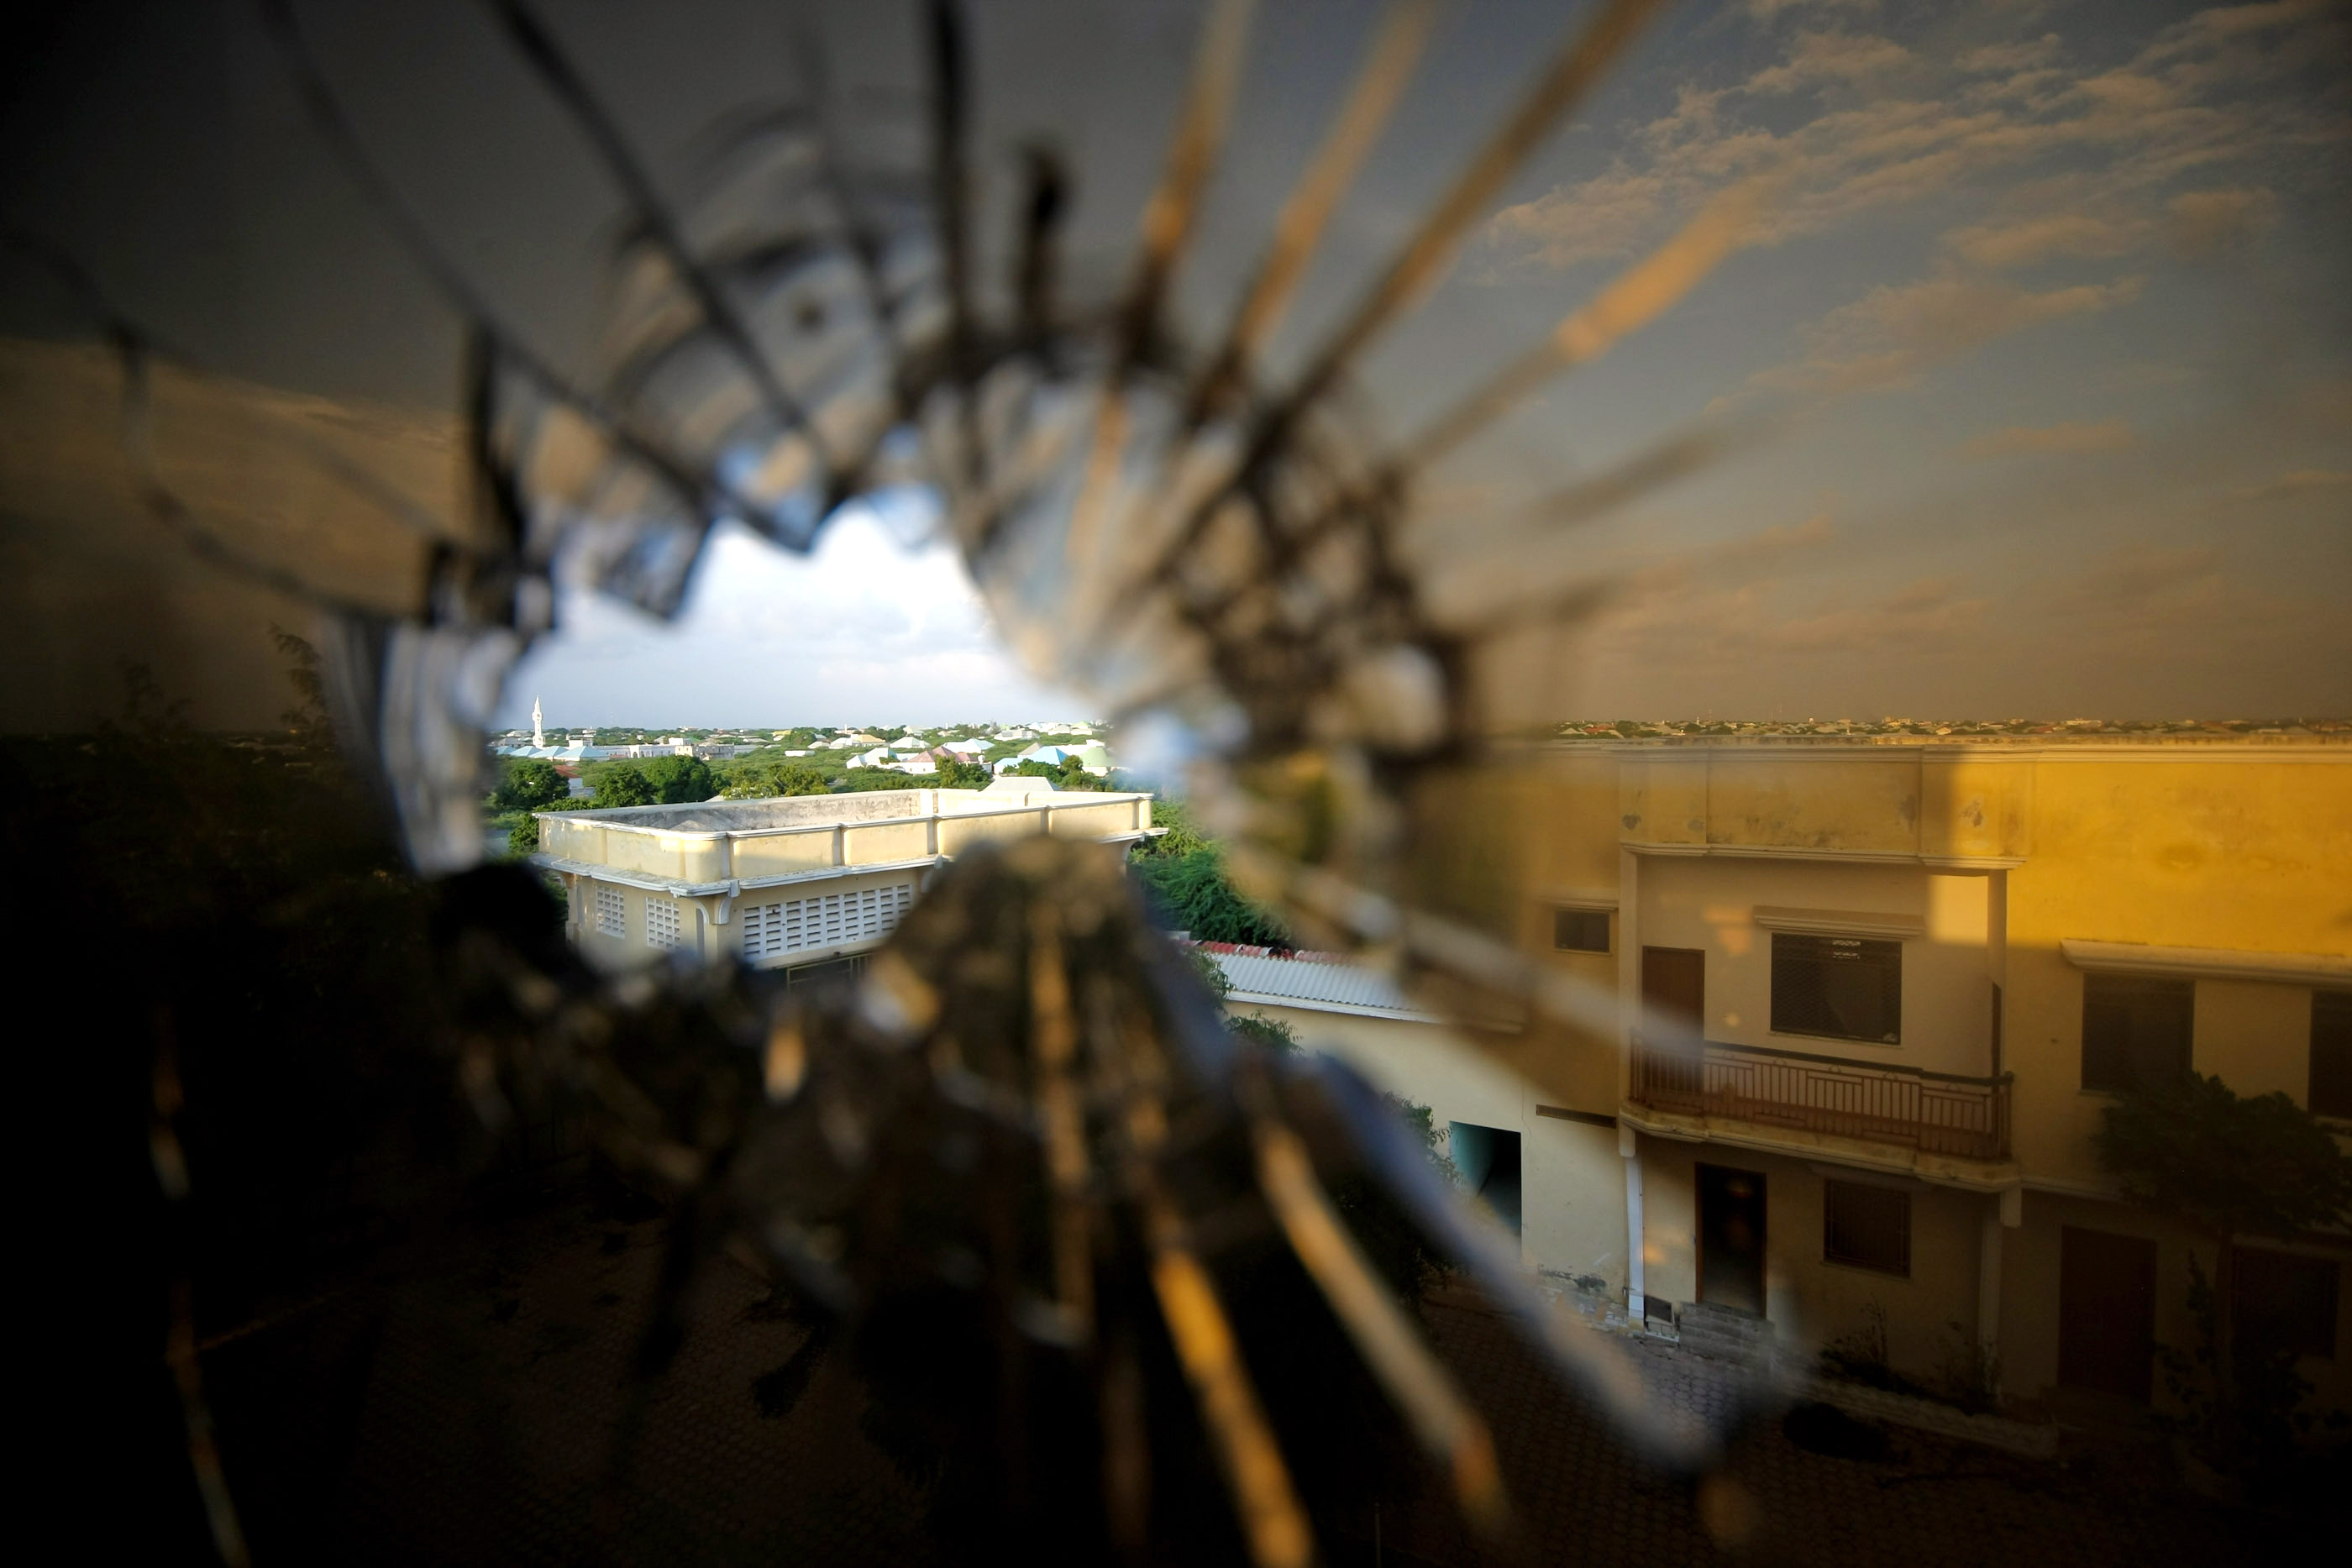 Blick durch ein Ein­schuss­loch in einem Hotelfenster. Im Hintergrund ist der nörd­li­che Teil von Mo­ga­di­schu, der Hauptstadt von So­ma­lia,  zu sehen, wo Trup­pen der Afri­ka­ni­schen Uni­on ge­gen die Al-Shabab-Mi­liz ge­kämpft ha­ben.